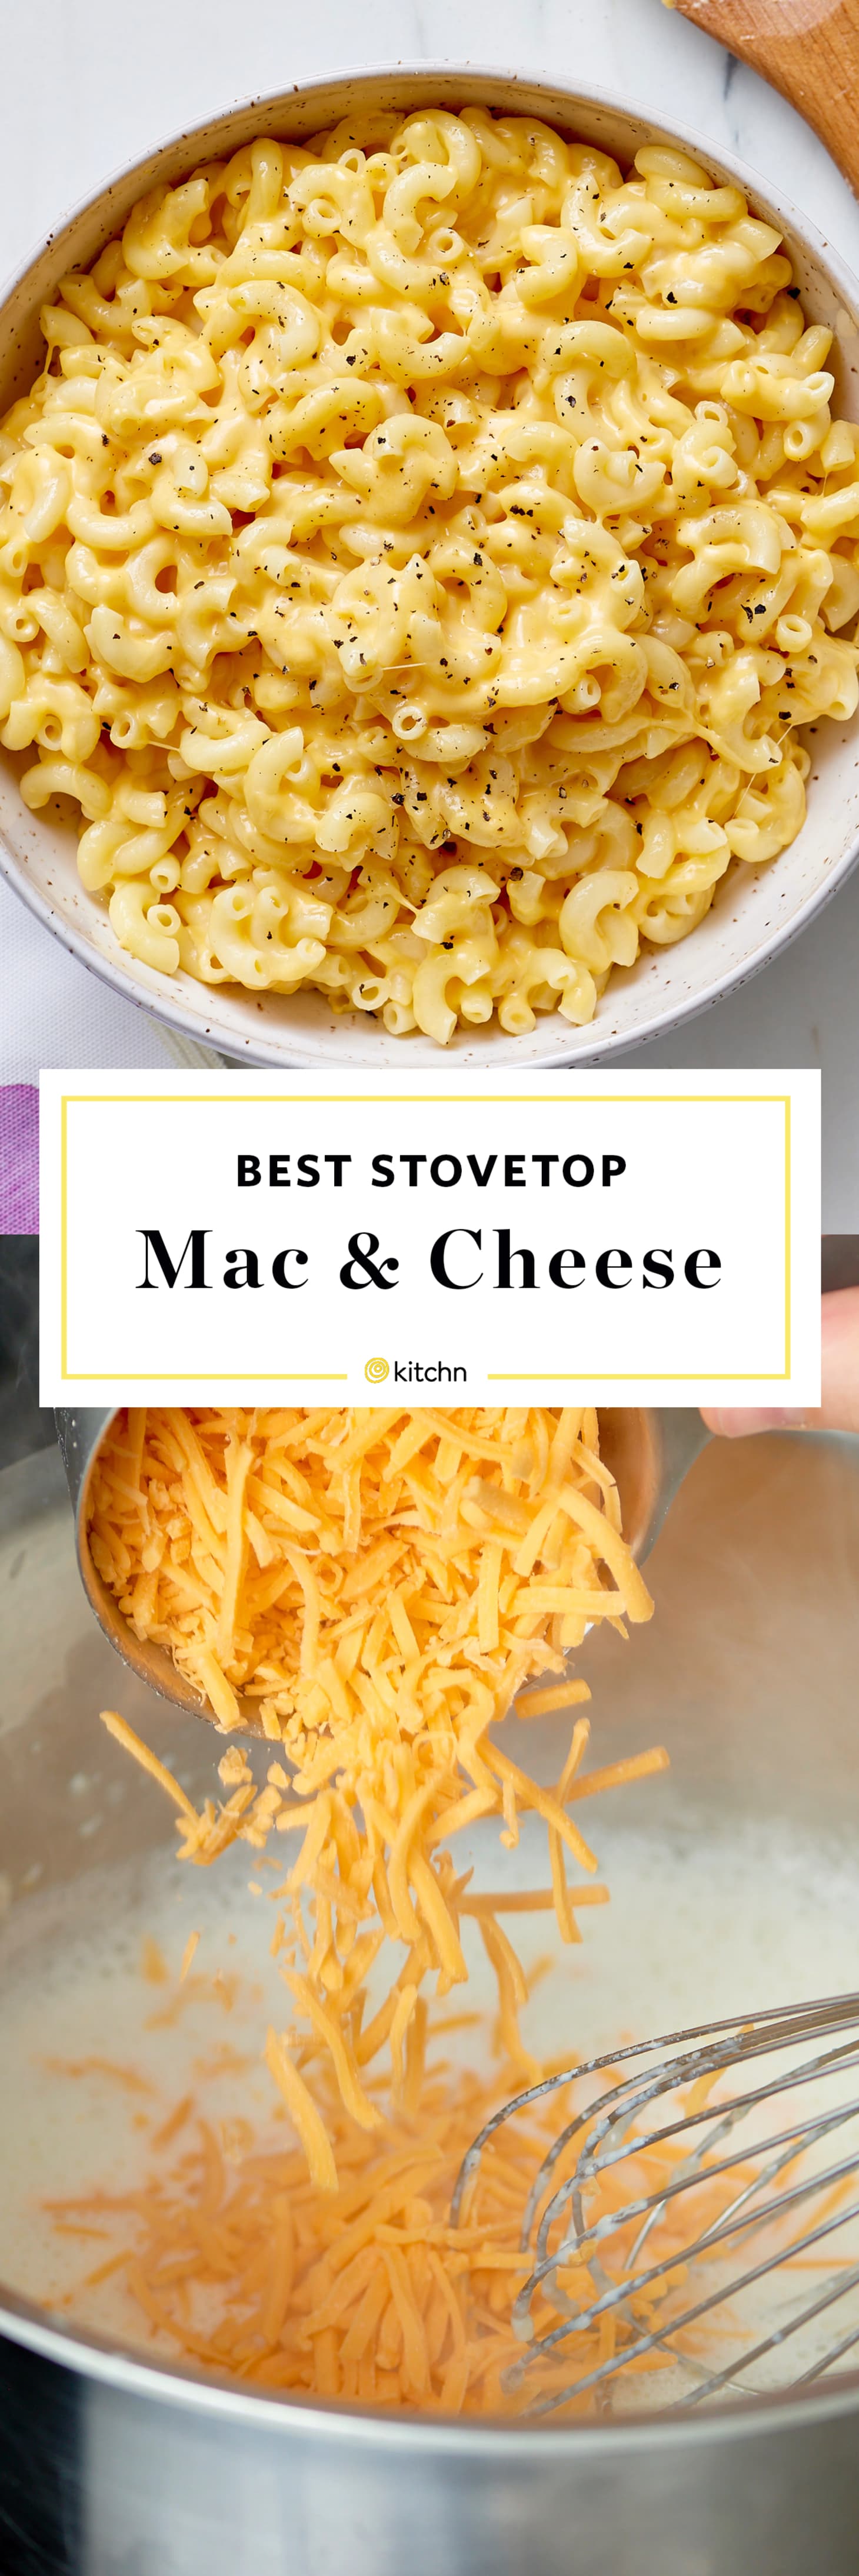 how to make cheese sauce for macaroni and cheeae